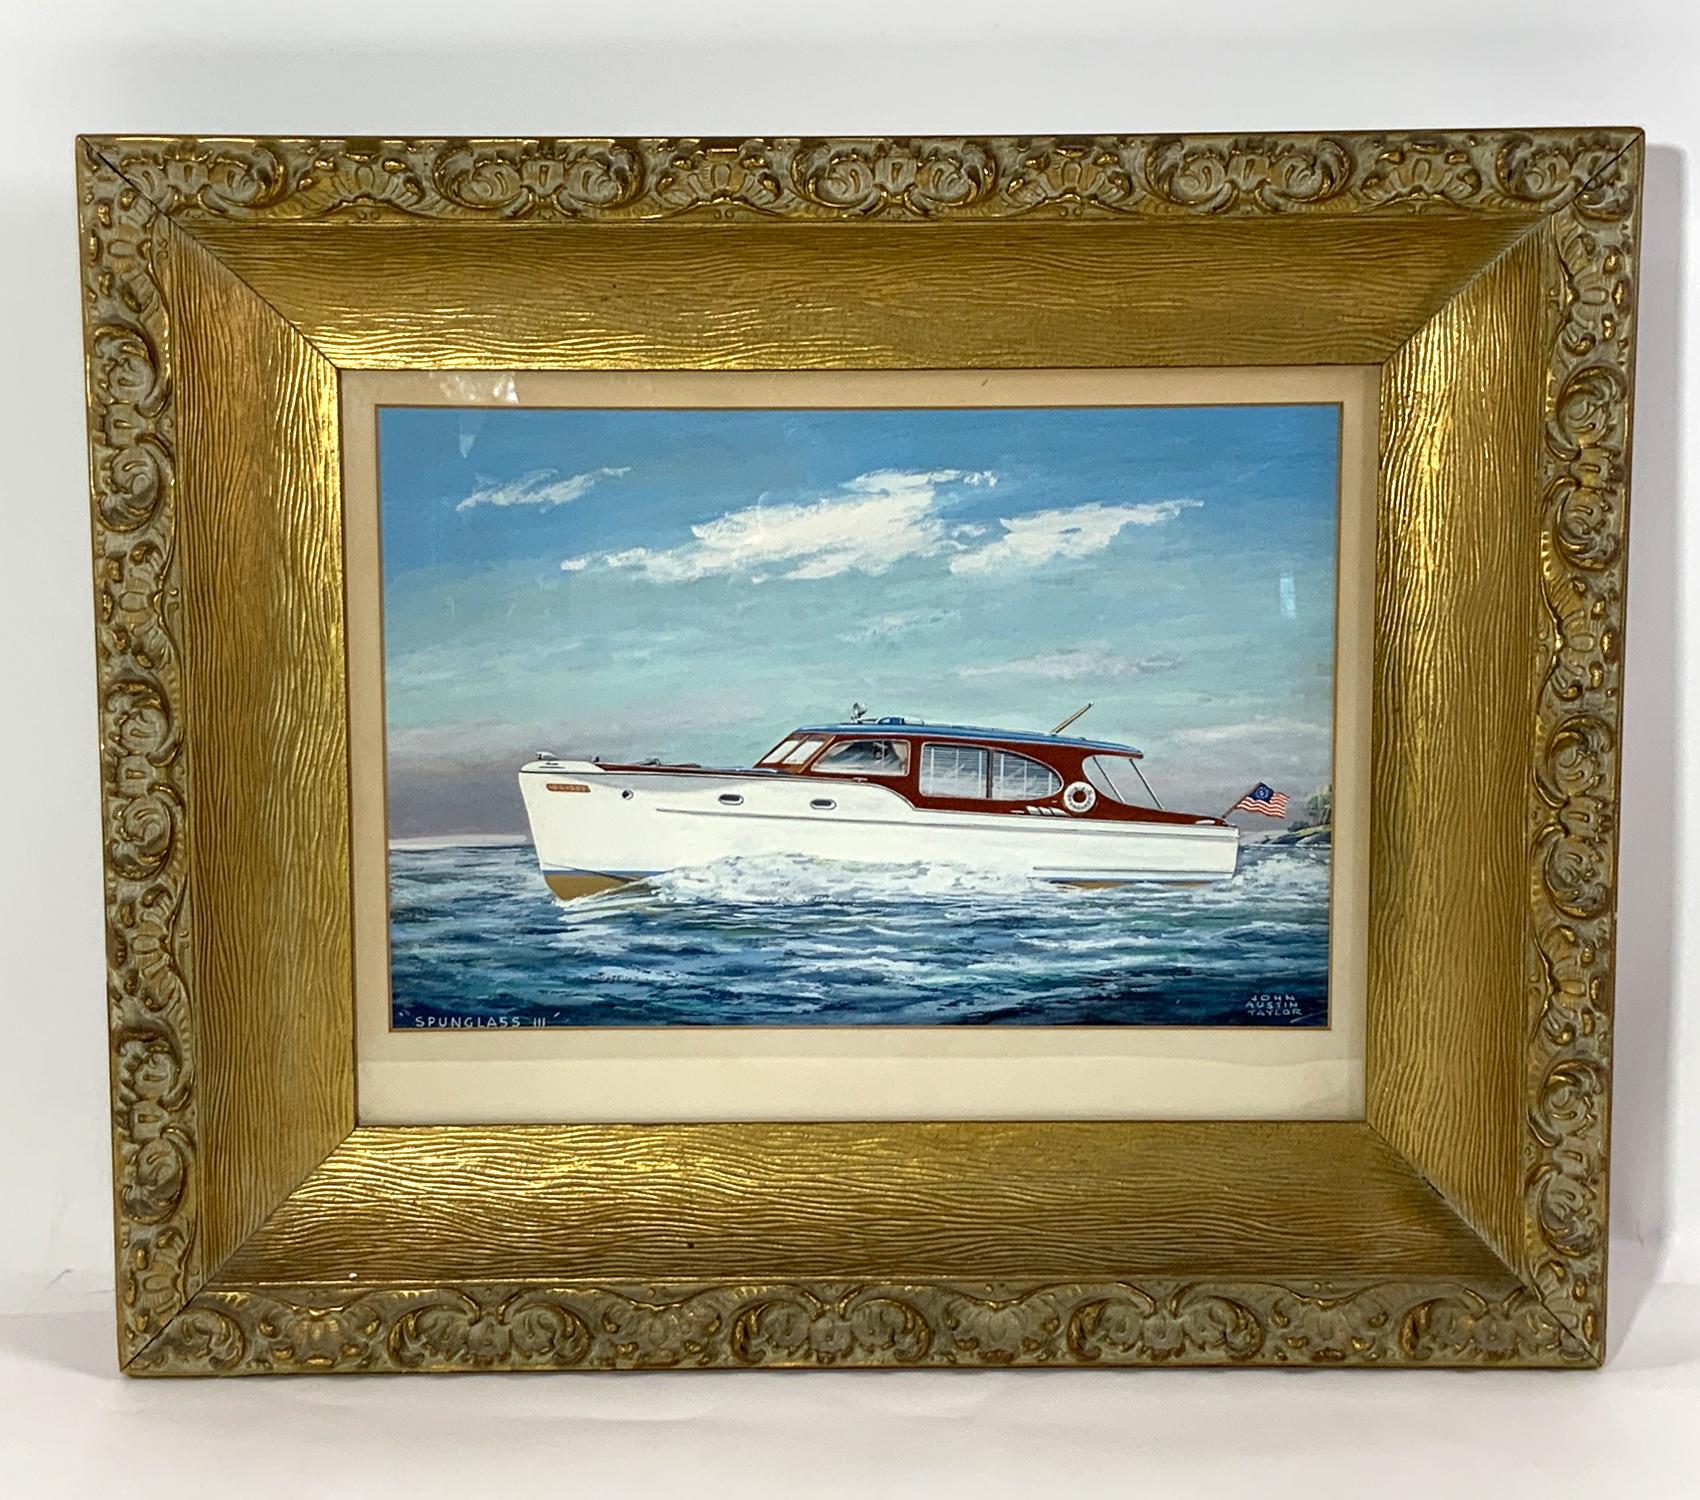 Peinture de yacht encadrée, réalisée par le célèbre illustrateur Jan Austin Taylor. Cette gouache montre le bateau naviguant sur une mer calme avec son capitaine à la barre. Le navire arbore un pavillon de yacht à l'arrière. Une bouée de sauvetage